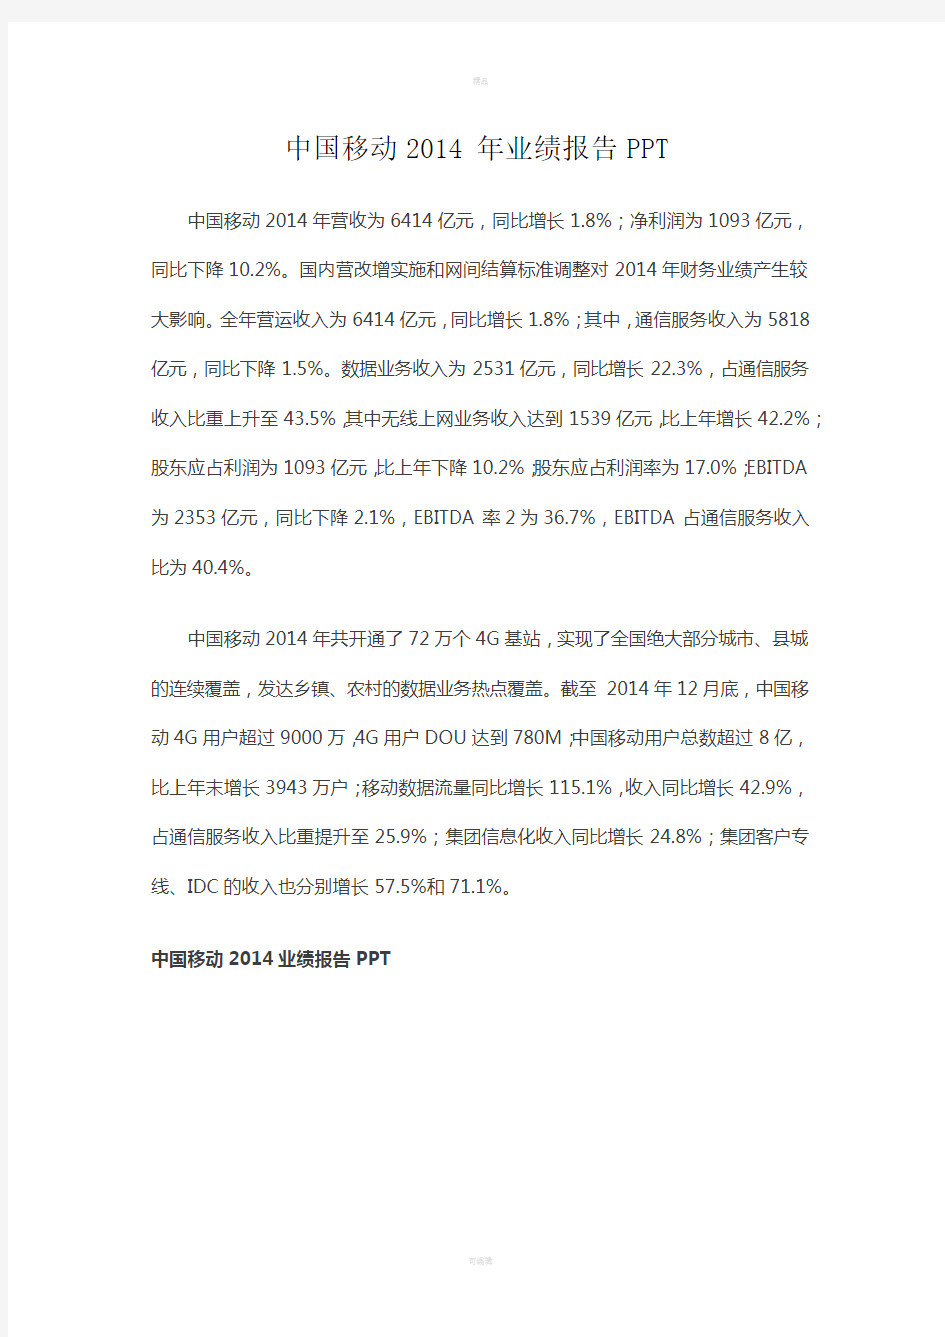 中国移动2014年业绩报告PPT